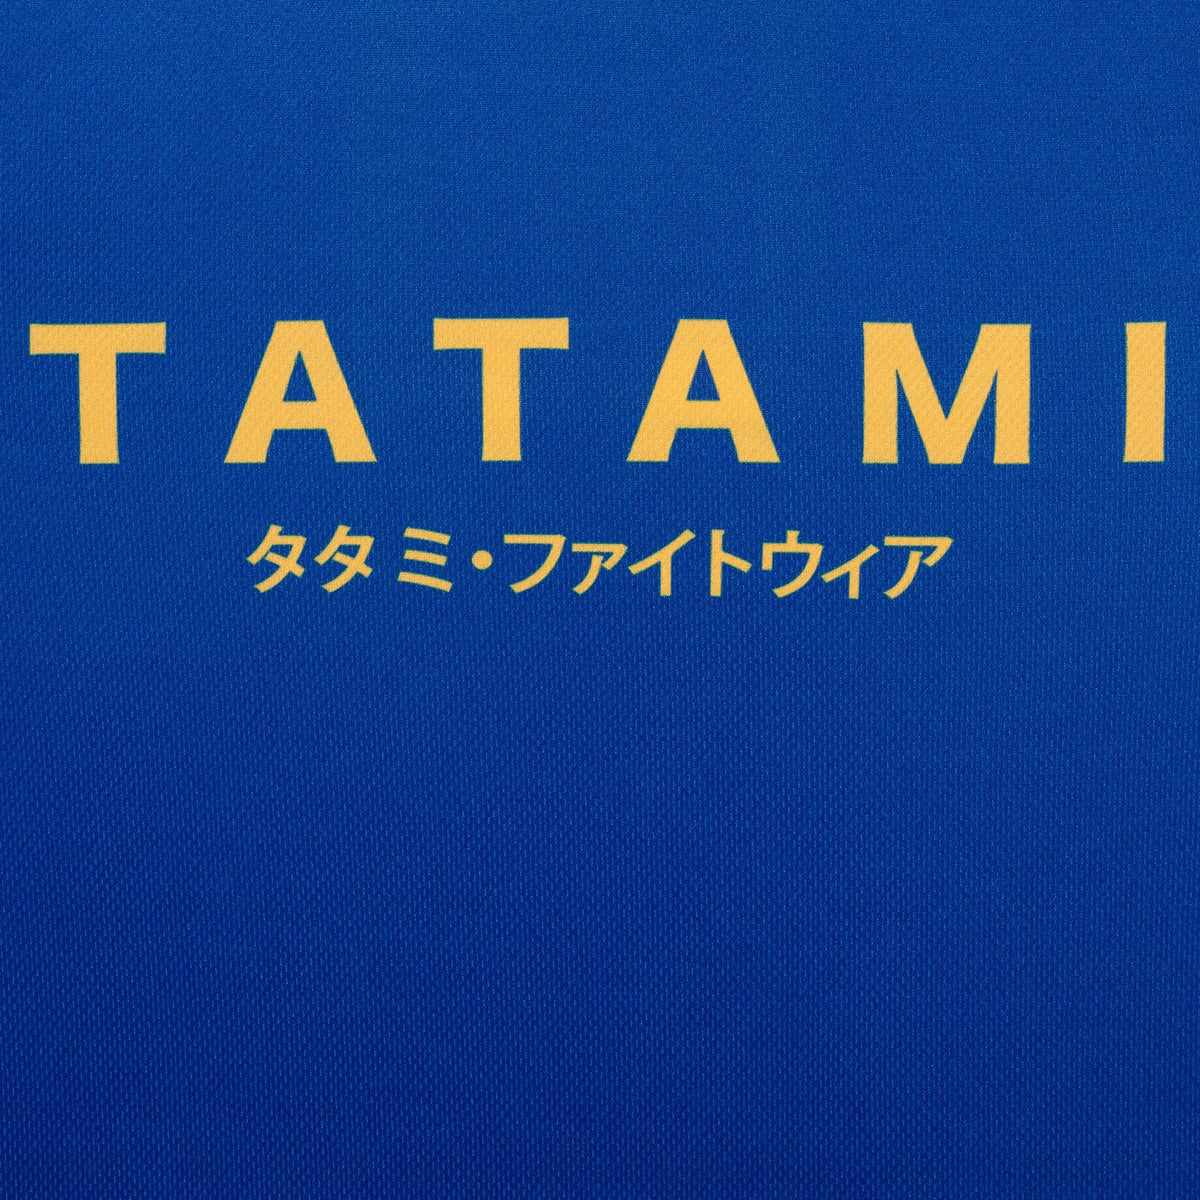 Tatami Fightwear Katakana Tank Top - Navy Tatami Fightwear